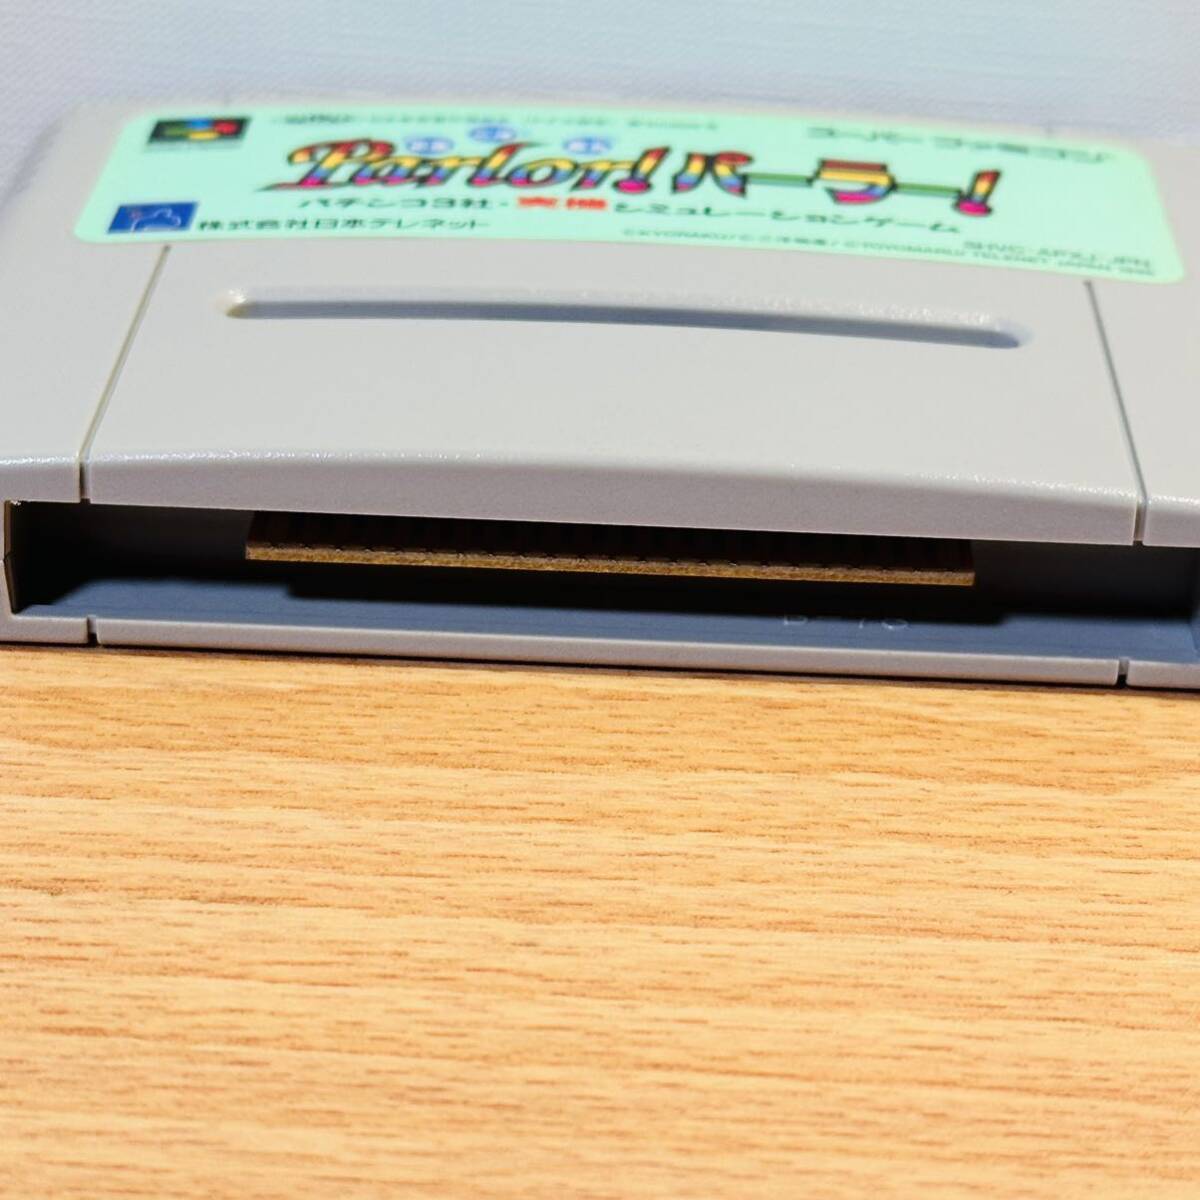  Super Famicom SFC с коробкой инструкция имеется soft кассета игра столица приятный * Sanyo *. круг Parlor! parlor!